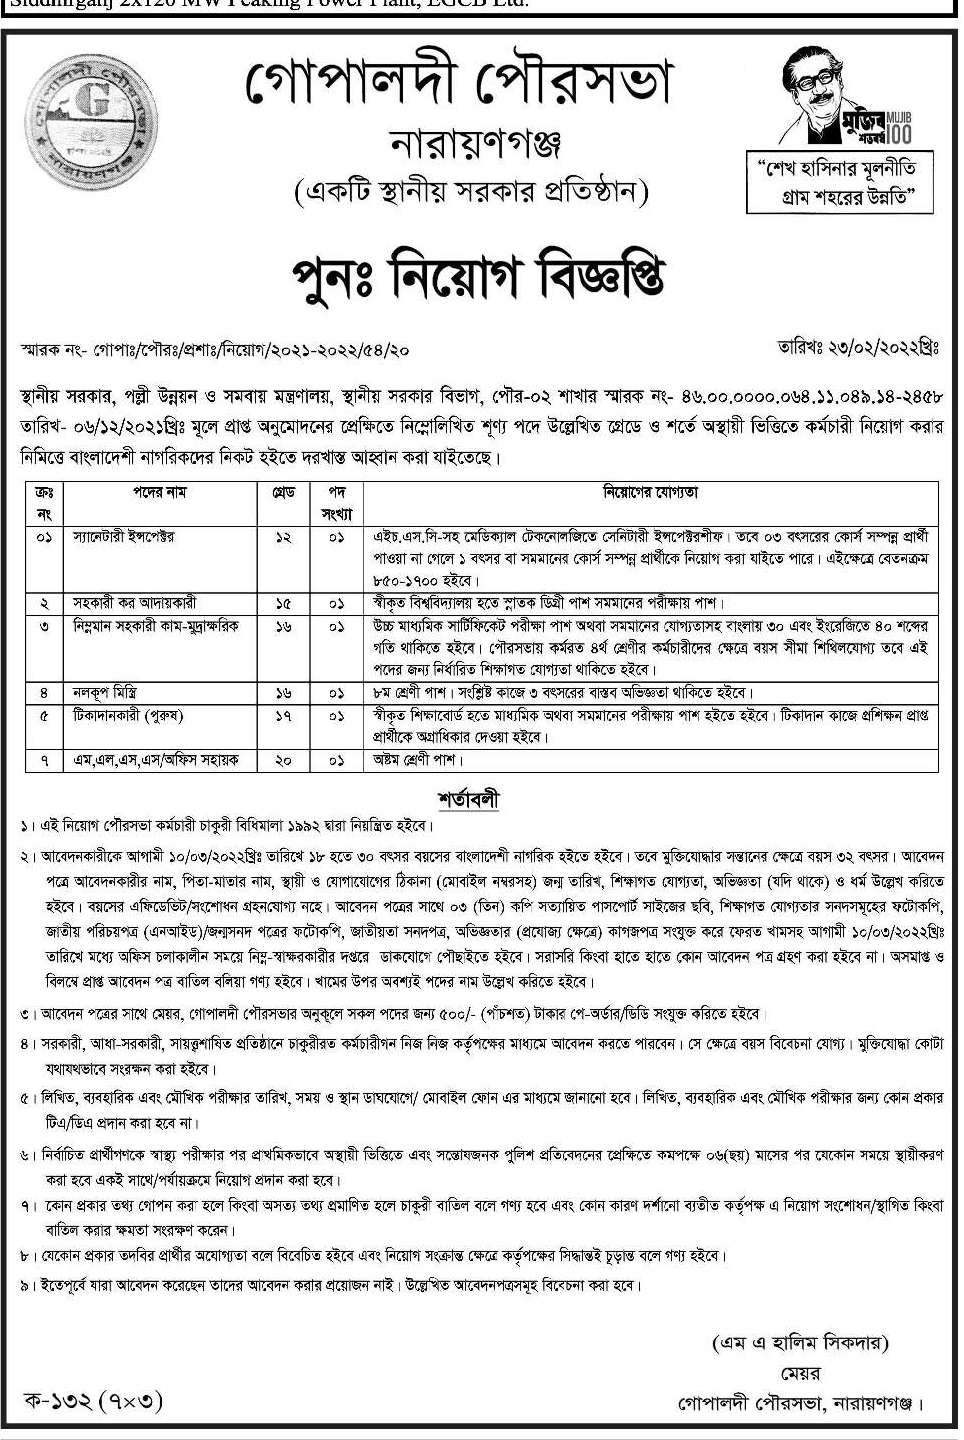 গোপালদী পৌরসভা কার্যালয় নিয়োগ বিজ্ঞপ্তি ২০২২ | Municipality office job circular 2022